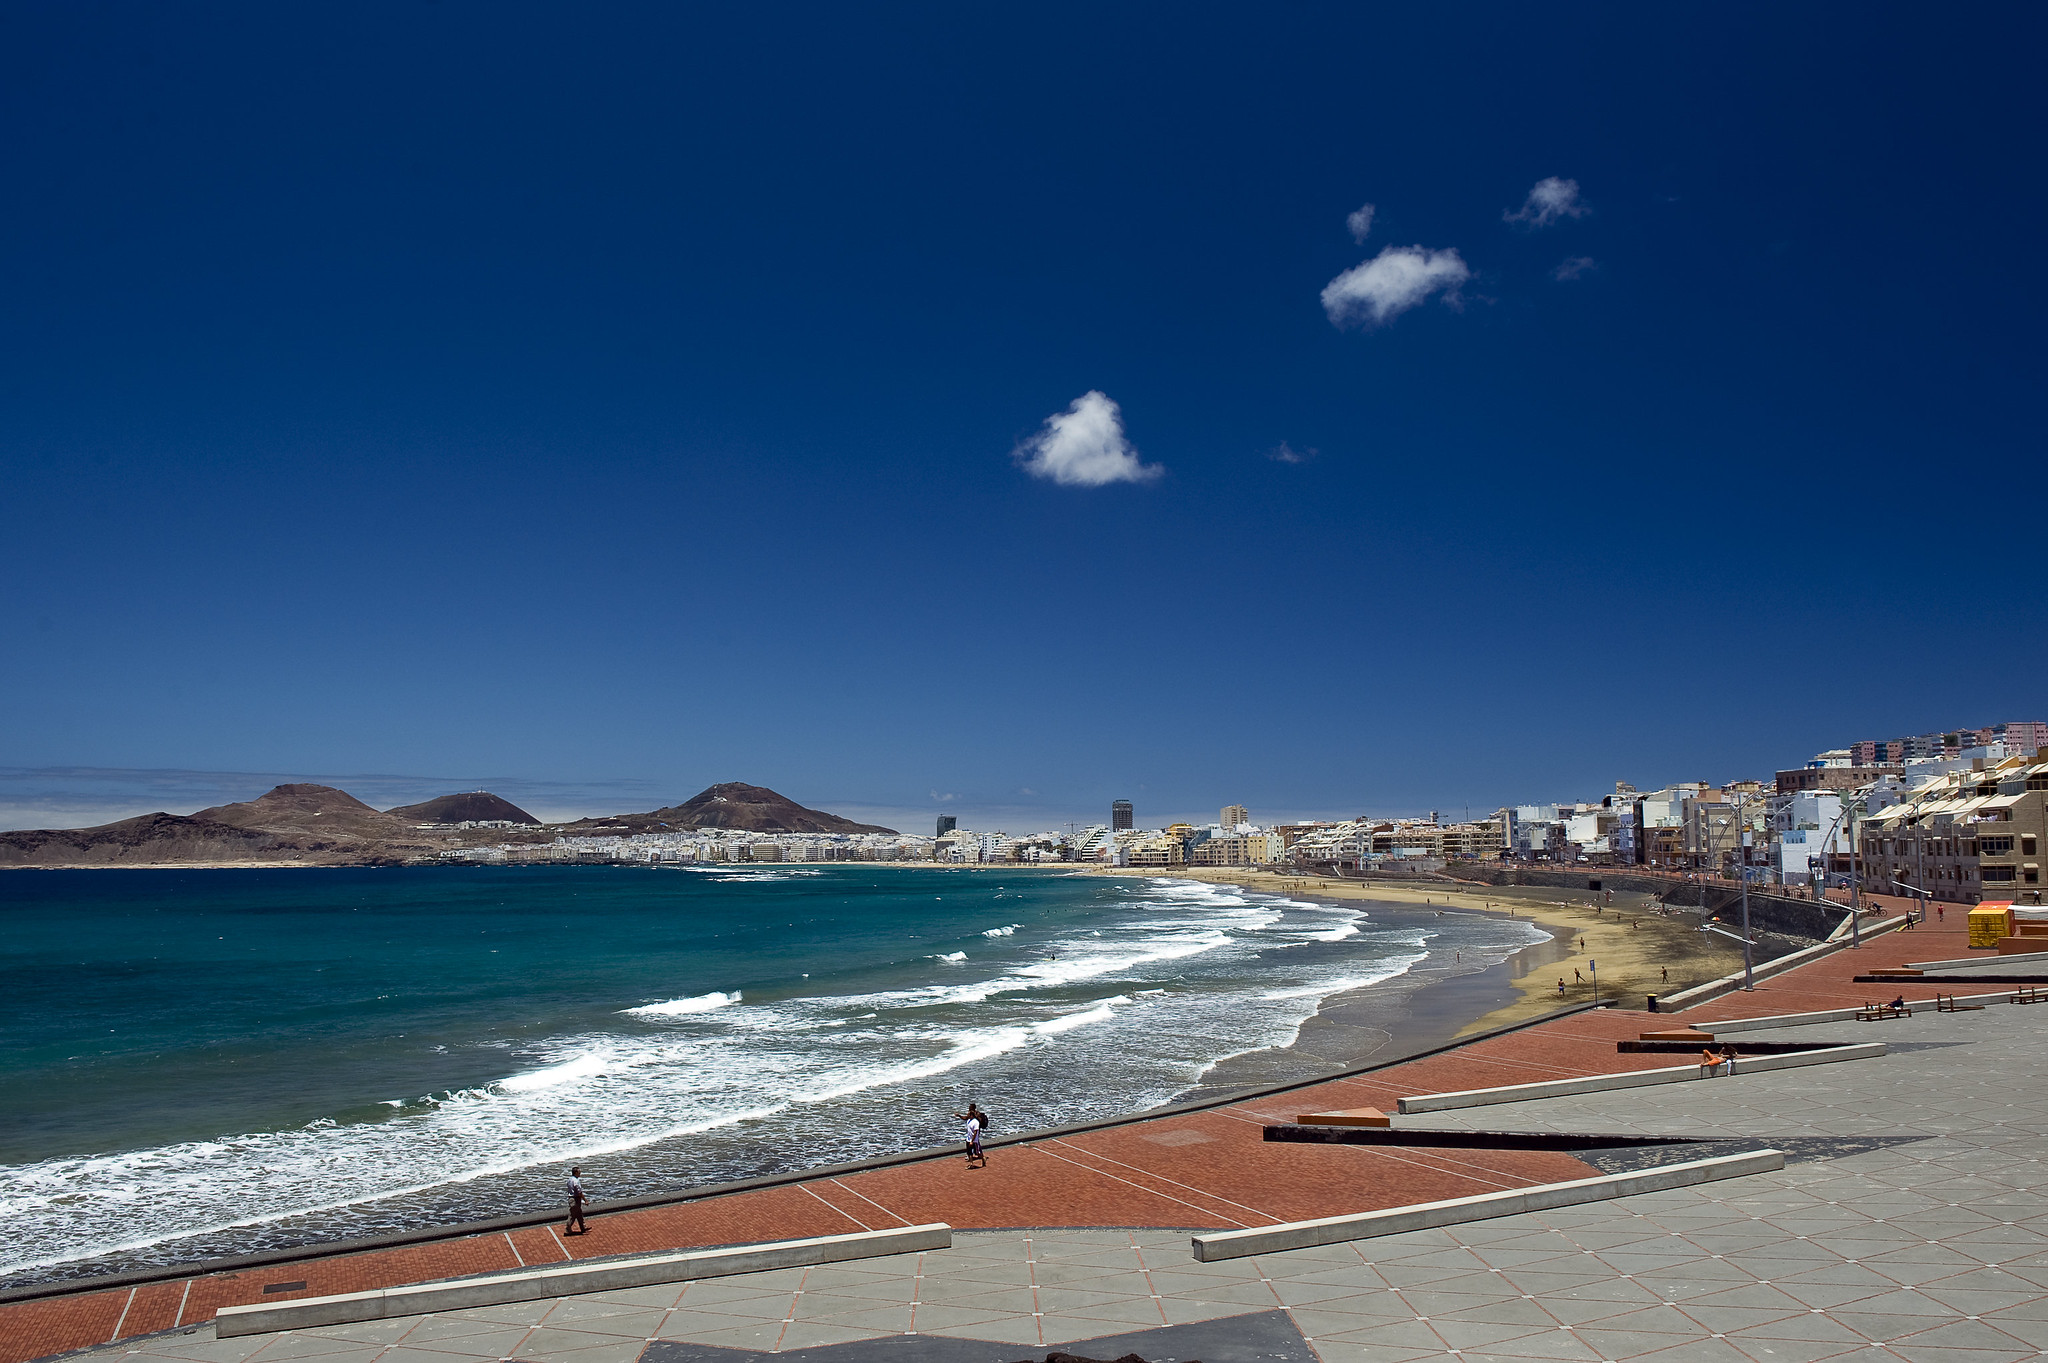 Playa de las Canteras / CanariasNoticias.es 